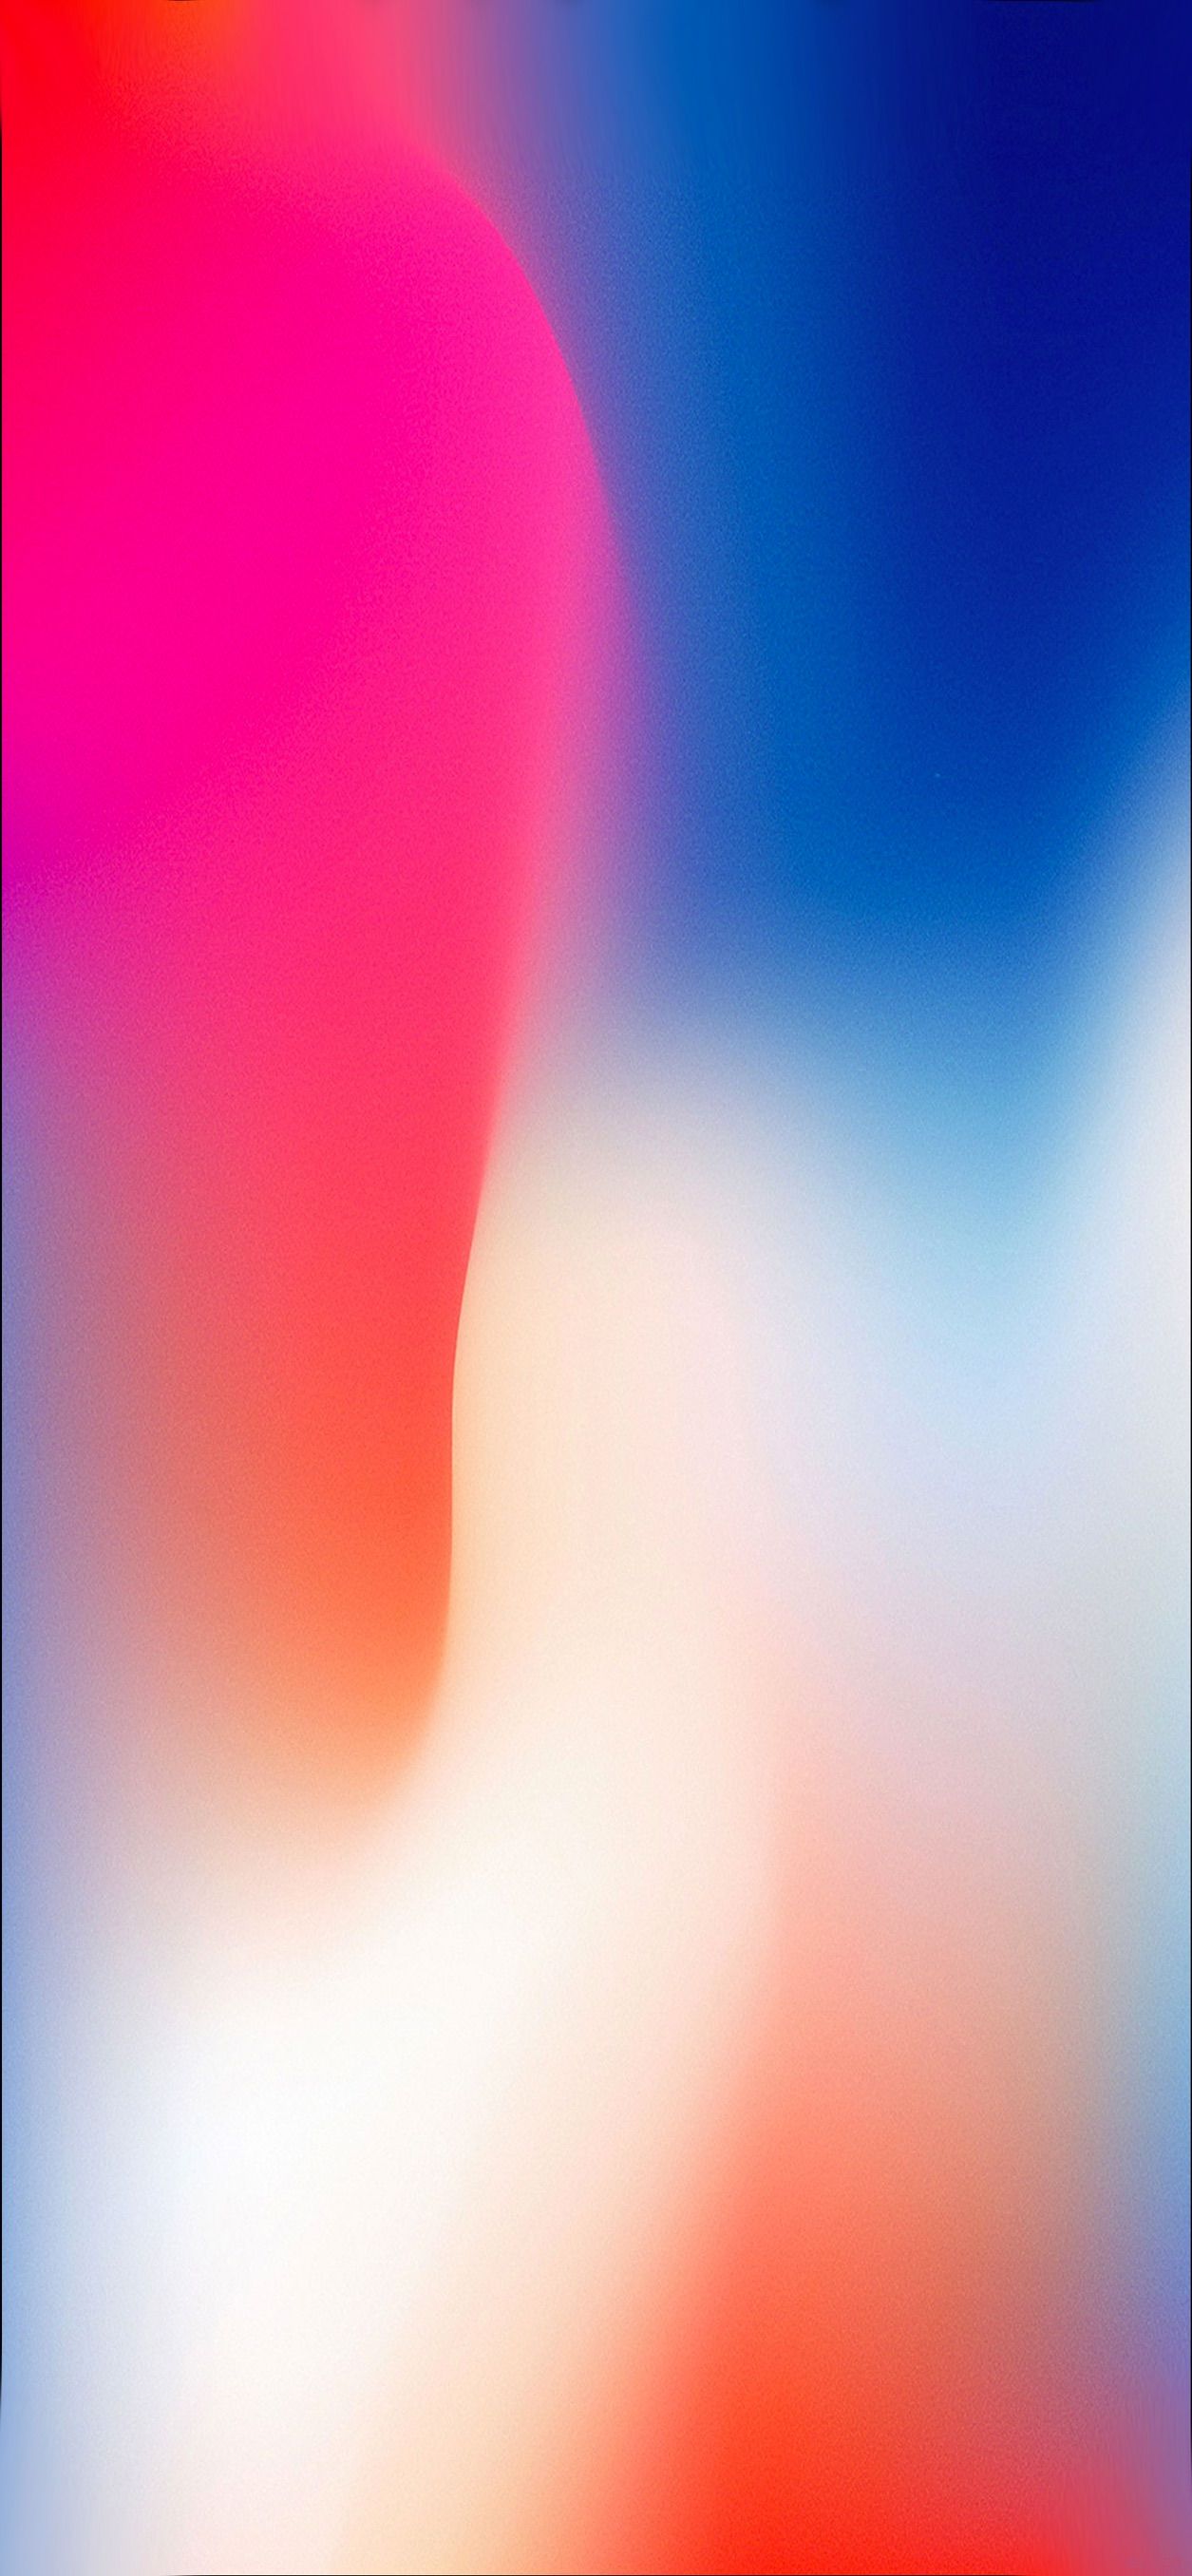 iPhone X wallpaper Bilder in 2019 Iphone wallpaper Ios 11